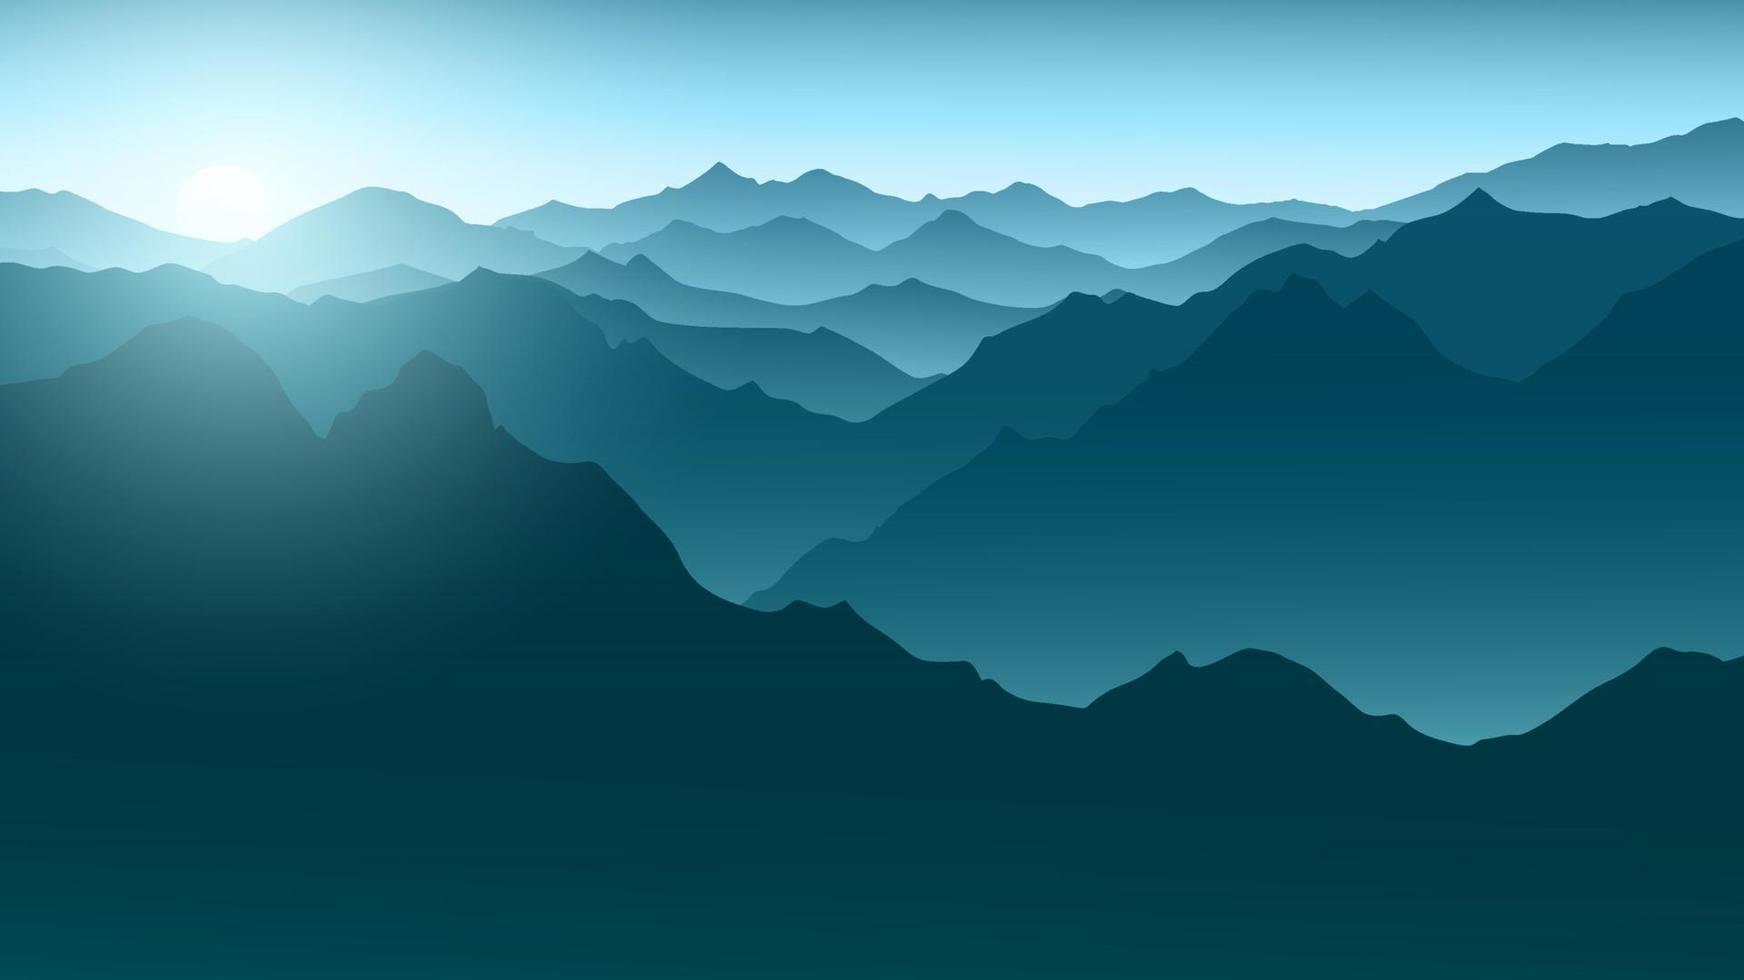 minimalistische nebelige morgendliche berglandschaftsillustration vektor